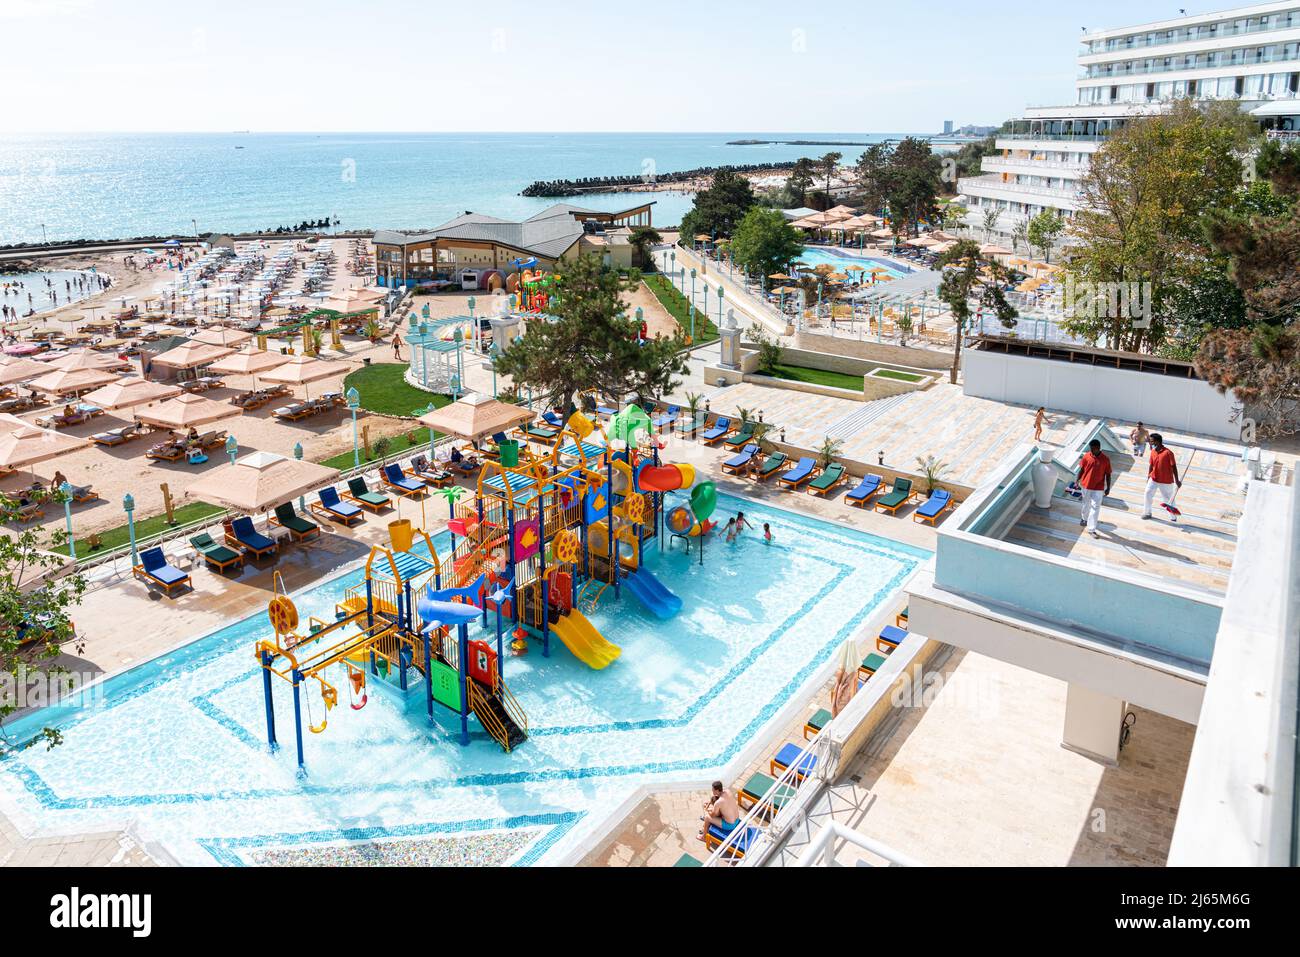 OLIMP, RUMÄNIEN - 19. AUGUST 2020: Olimp Luxuriöses Ferienresort, Hotels und Strand am Schwarzen Meer im Sommer mit überfüllten Leuten, die das Hot genießen Stockfoto